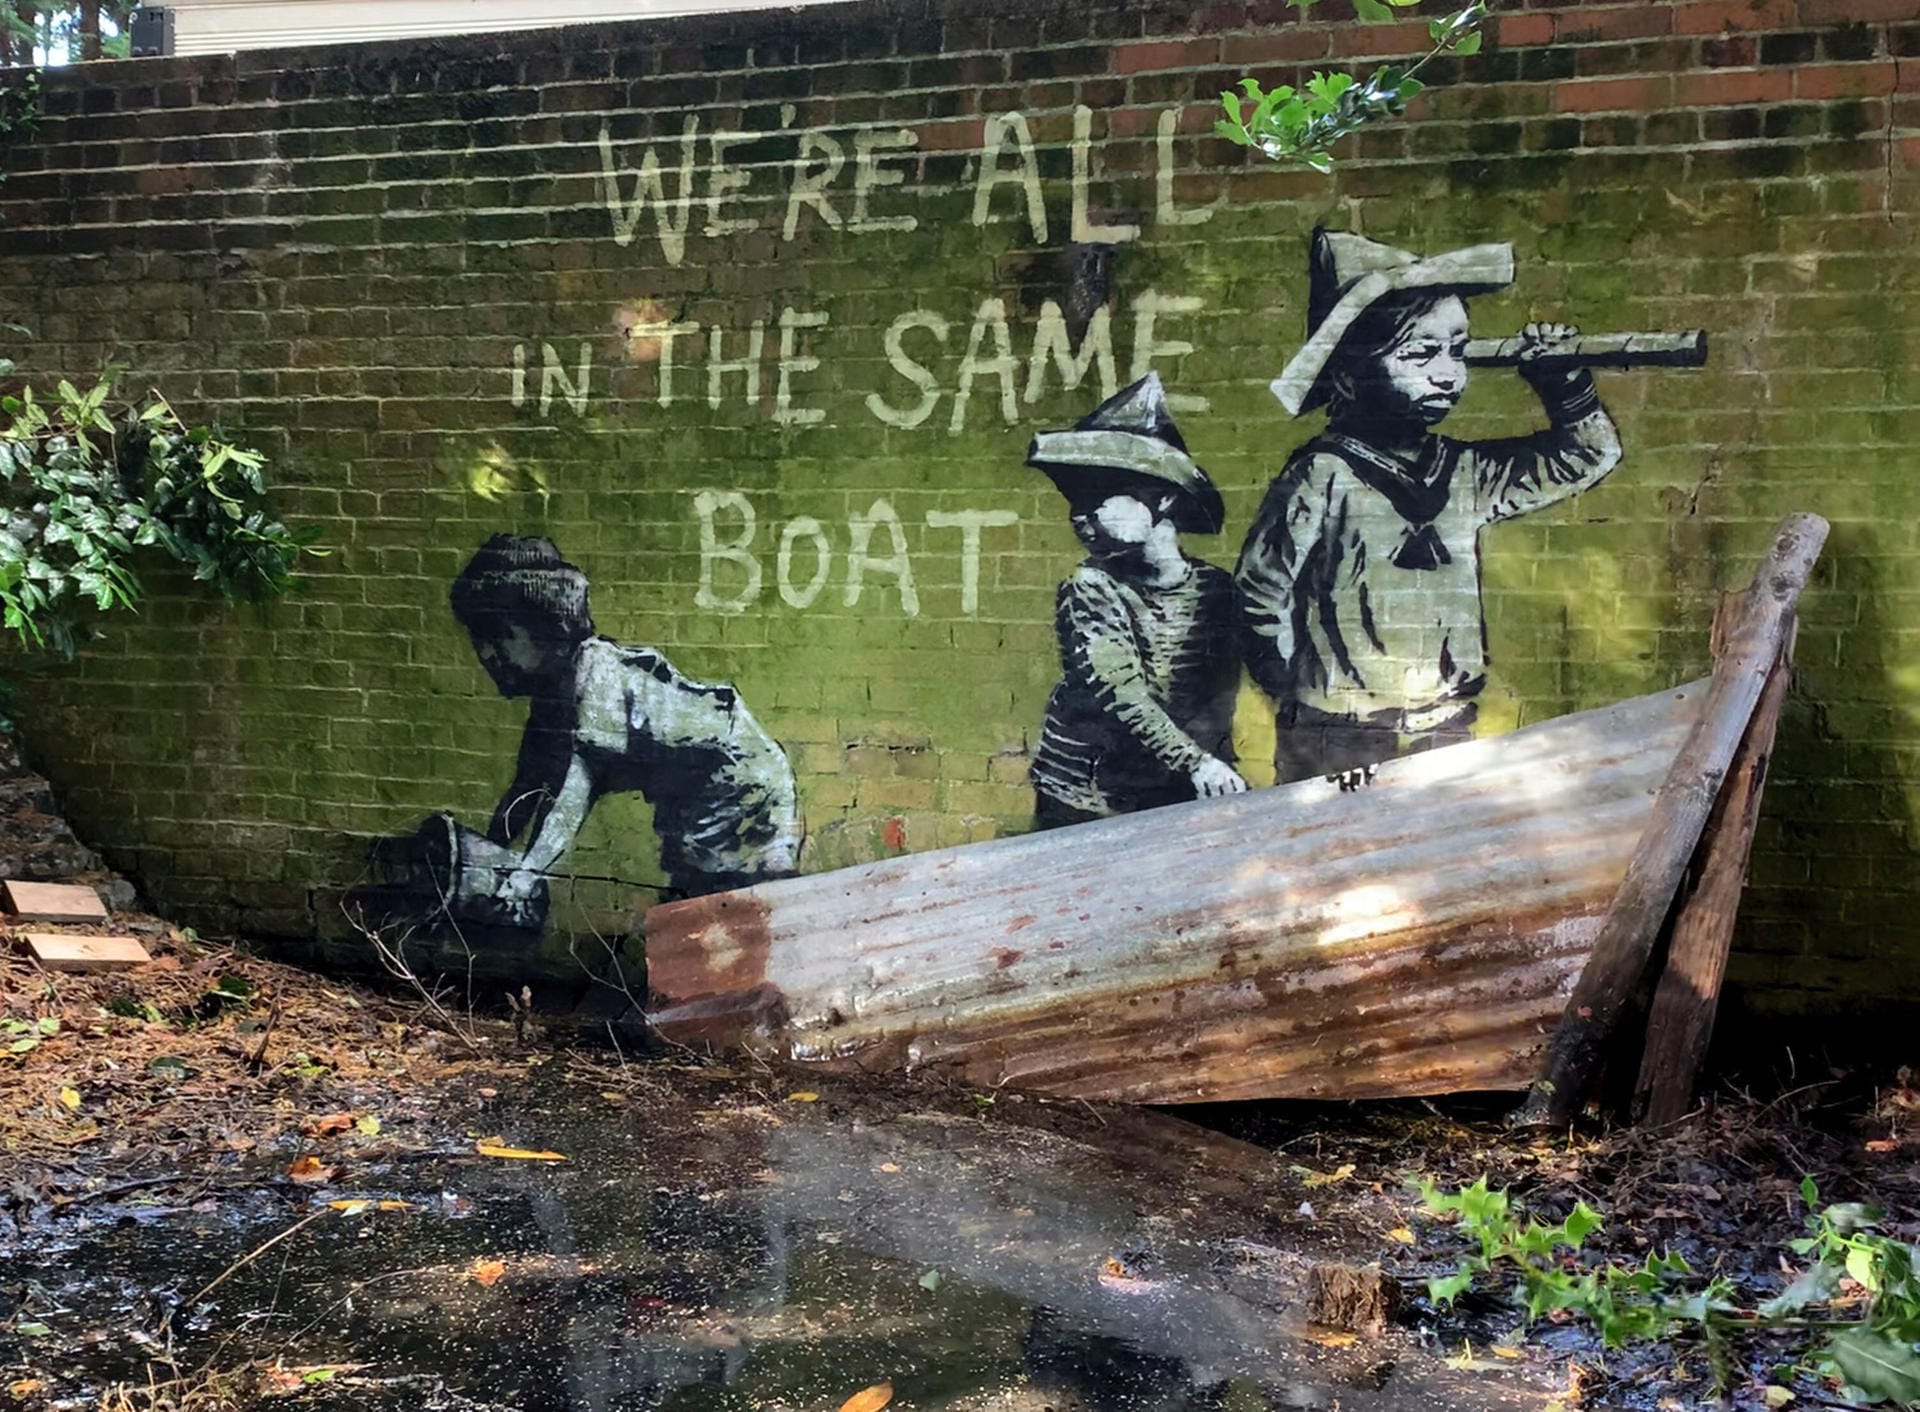 Ein weiteres Kunstwerk von Banksy in Lowestoft